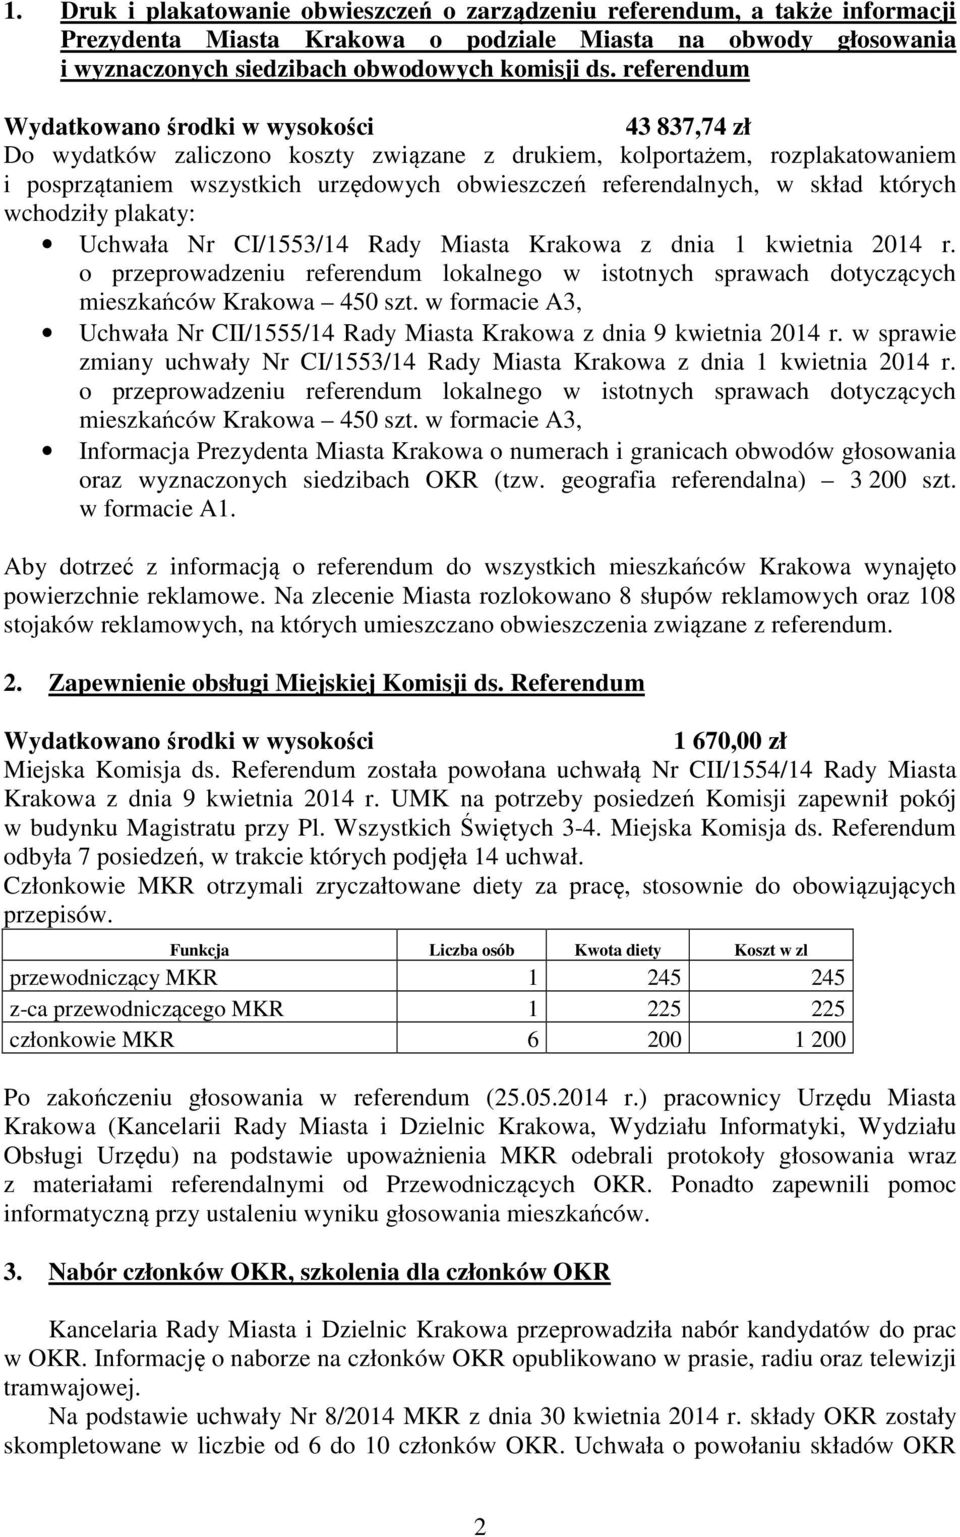 plakaty: Uchwała Nr CI/1553/14 Rady Miasta Krakowa z dnia 1 kwietnia 2014 r. o przeprowadzeniu referendum lokalnego w istotnych sprawach dotyczących mieszkańców Krakowa 450 szt.